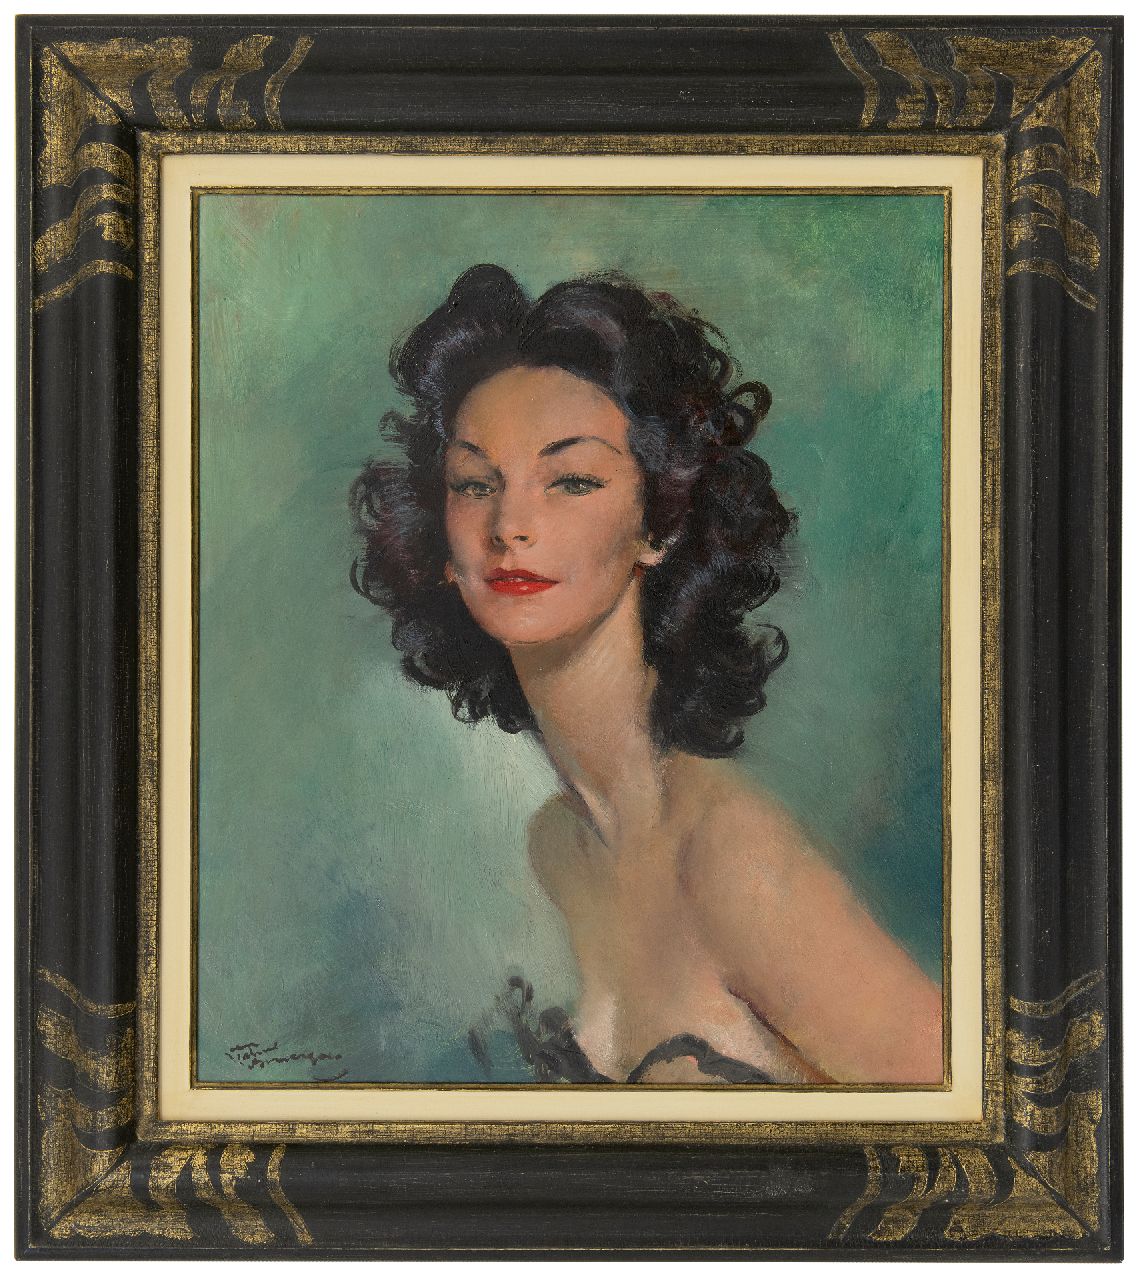 Domergue J.G.  | Jean-Gabriel Domergue | Paintings offered for sale | Jeune femme aux cheveux noirs, oil on board 54.8 x 46.0 cm, signed l.l.